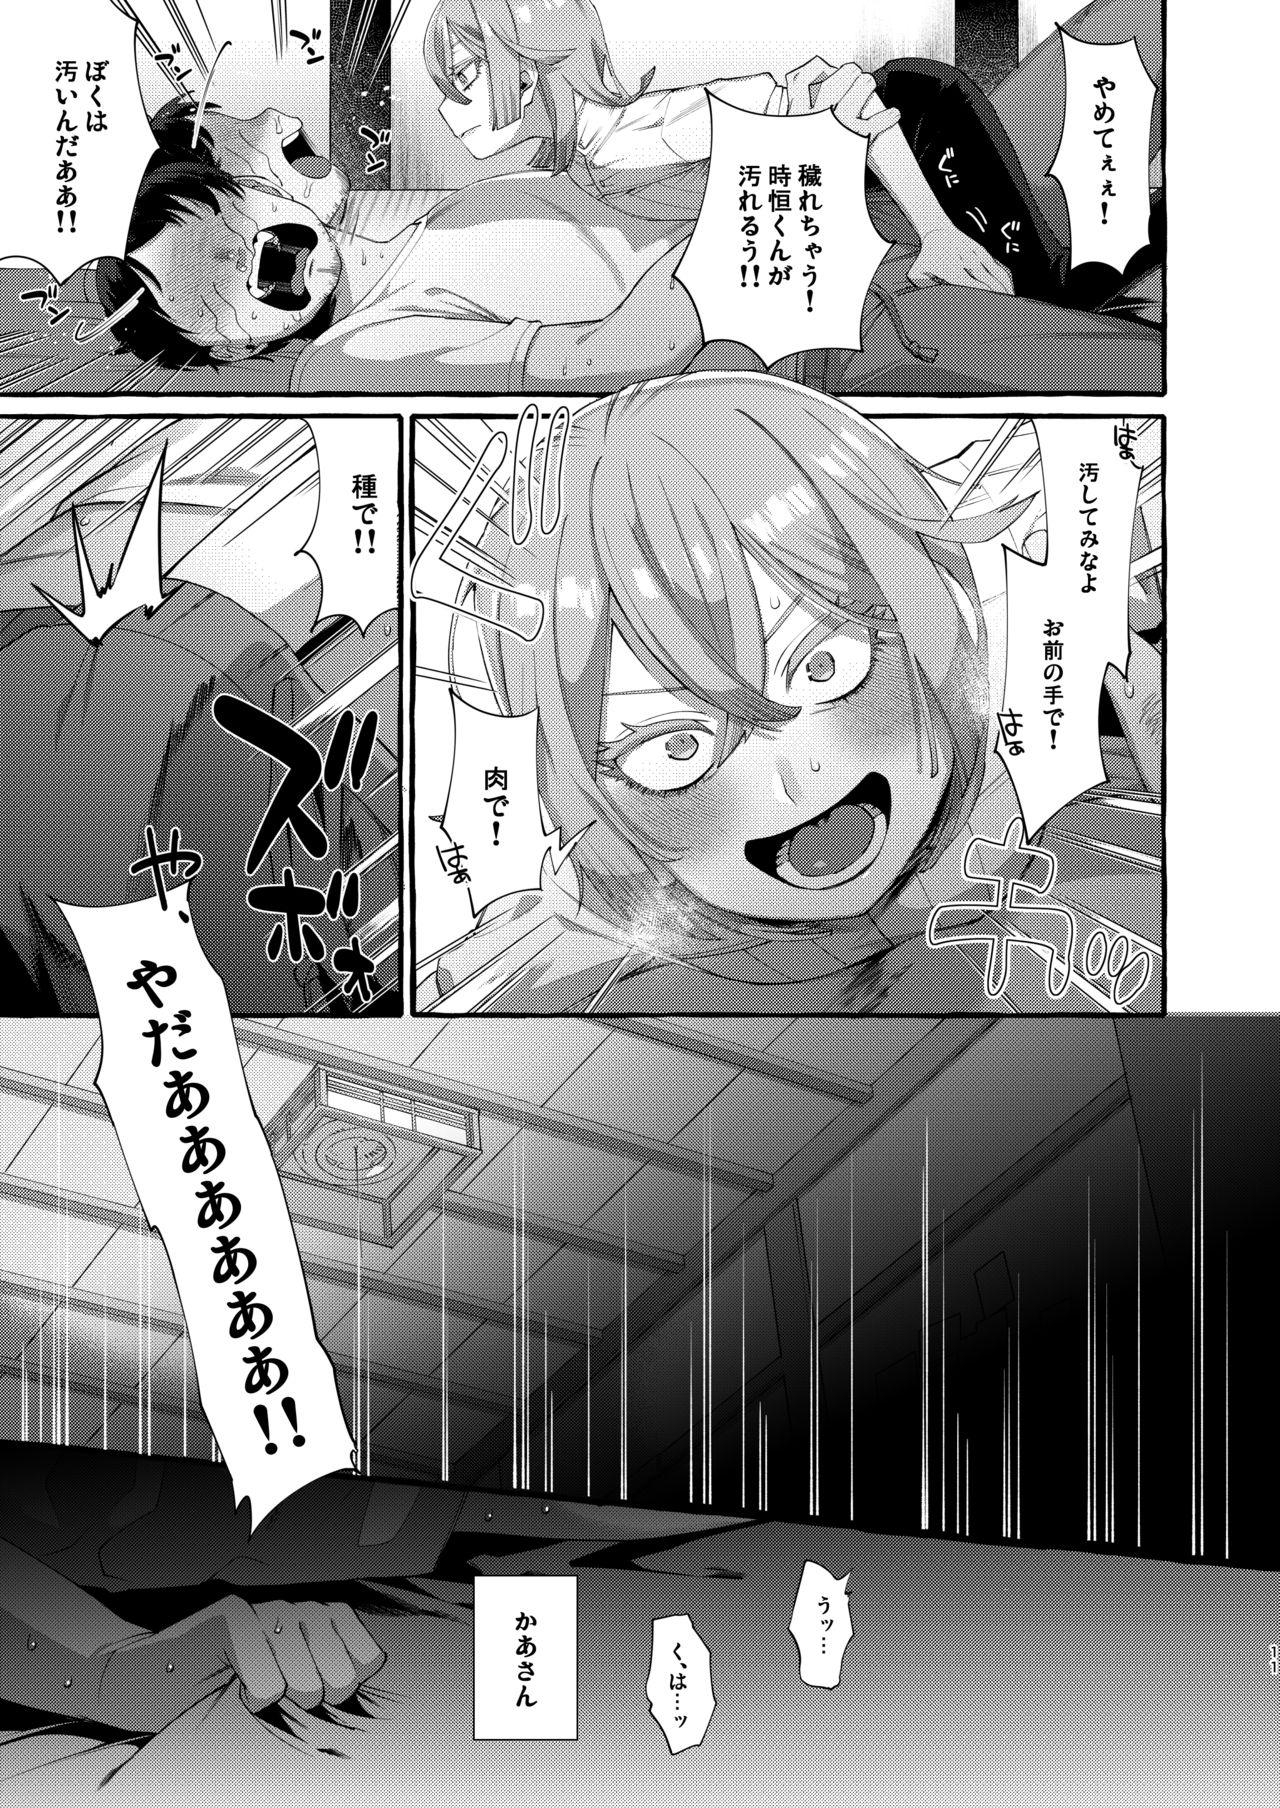 Sexteen Kare wa Boku no Kami-sama de aru. - Original Scene - Page 11